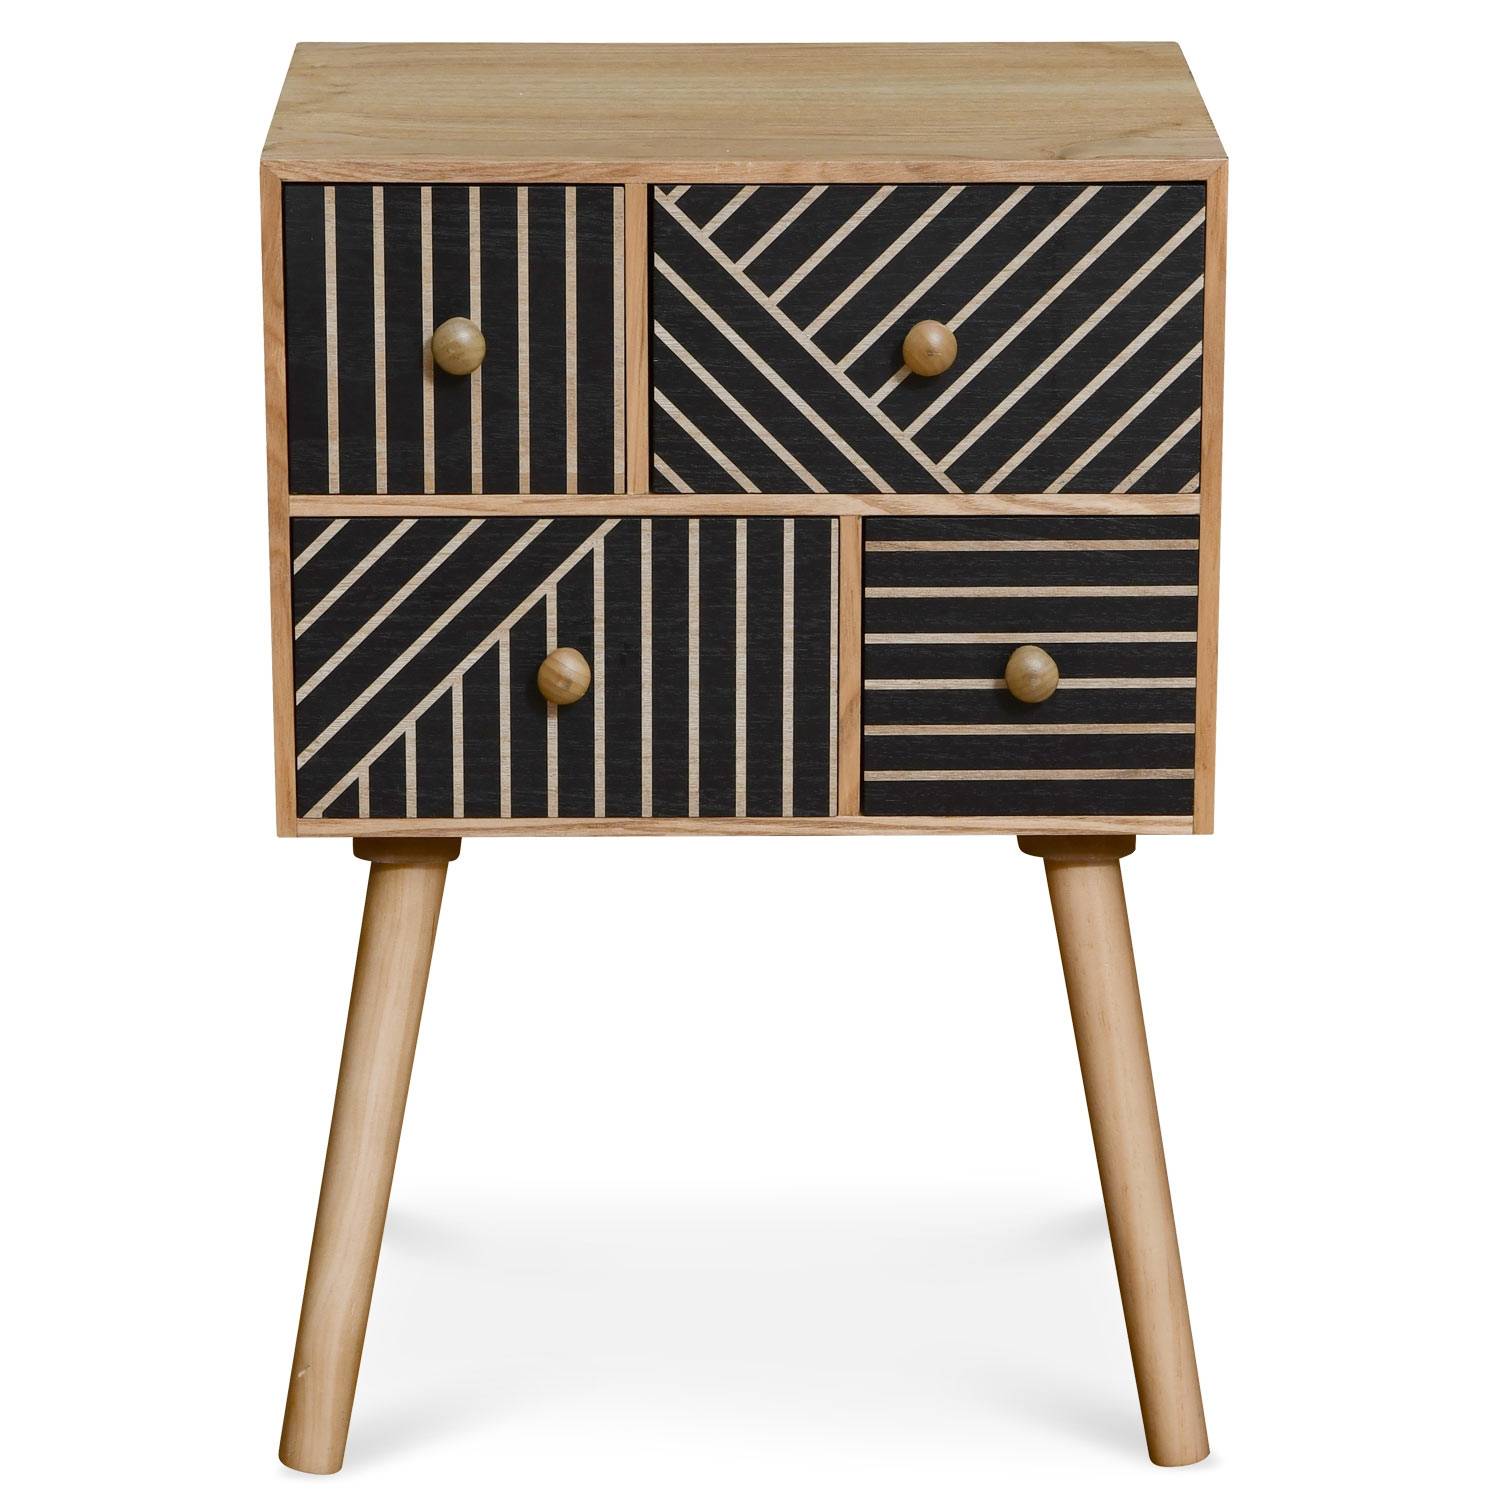 Table de chevet 4 tiroirs en bois avec motifs géométriques